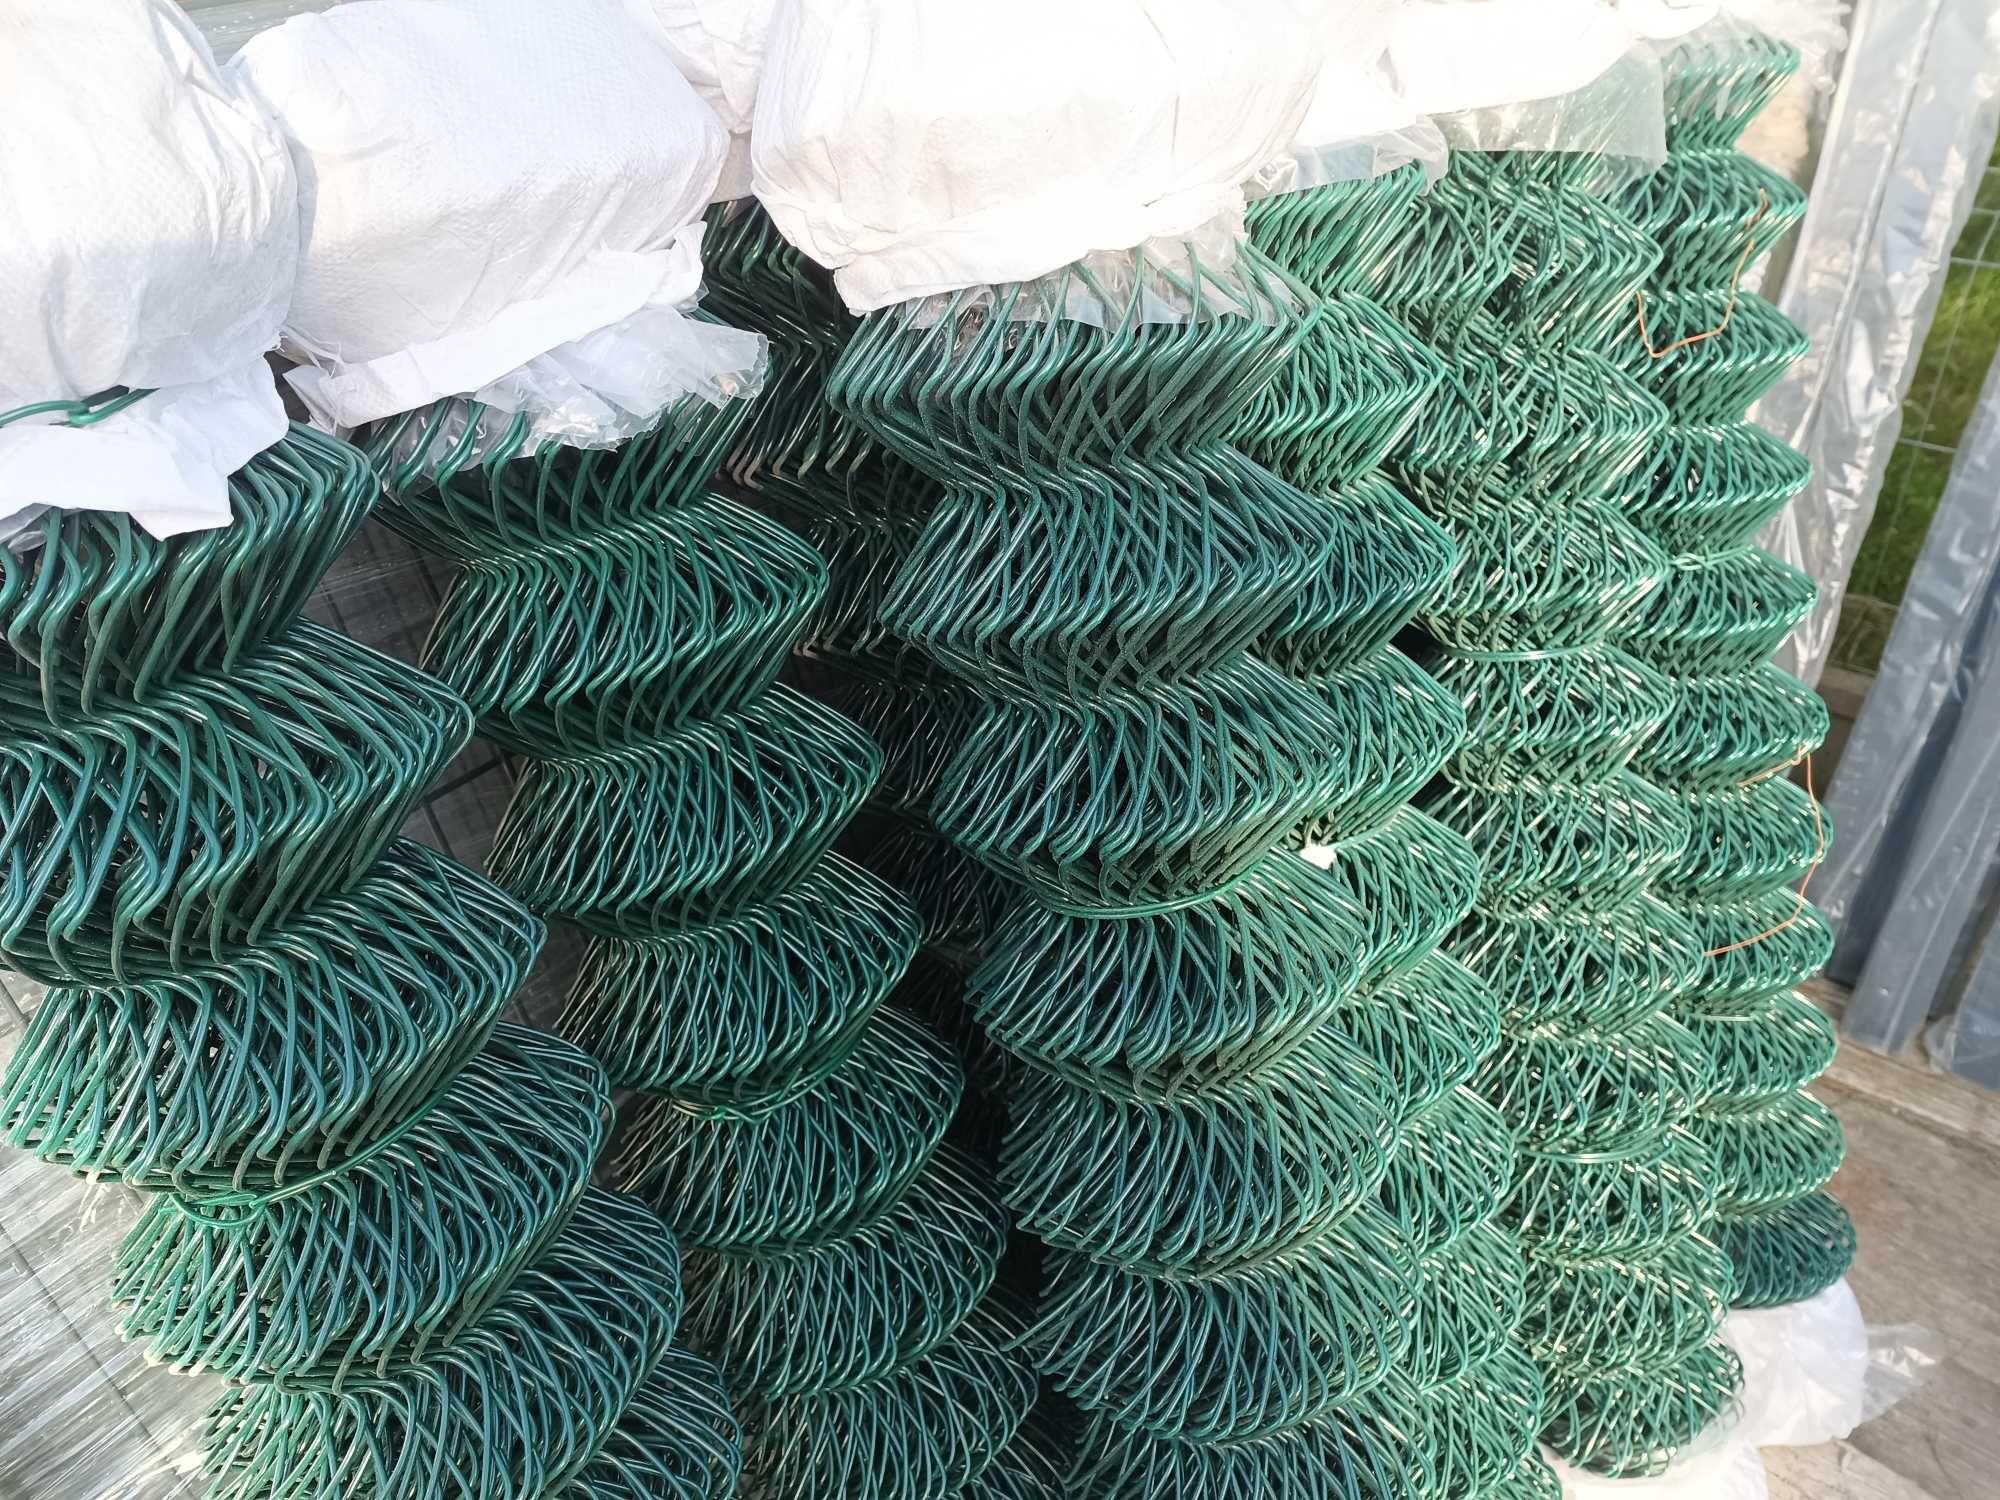 Siatka ogrodzeniowa pcv fi 3,1 wysokość 125 kolor antracyt i zielona